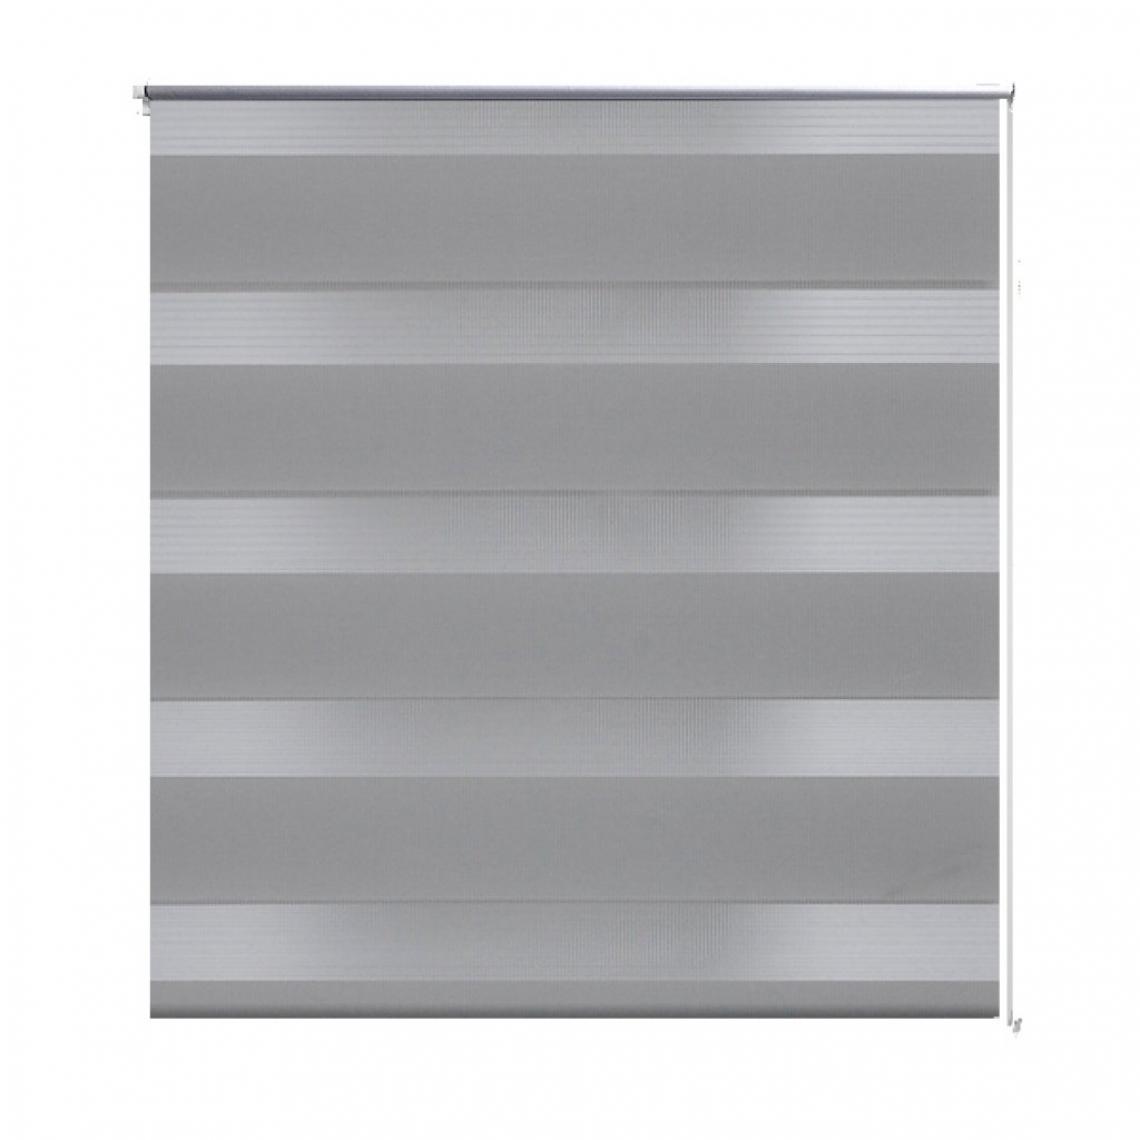 Helloshop26 - Store enrouleur gris tamisant 80 x 175 cm fenêtre rideau pare-vue volet roulant 4102097 - Store compatible Velux